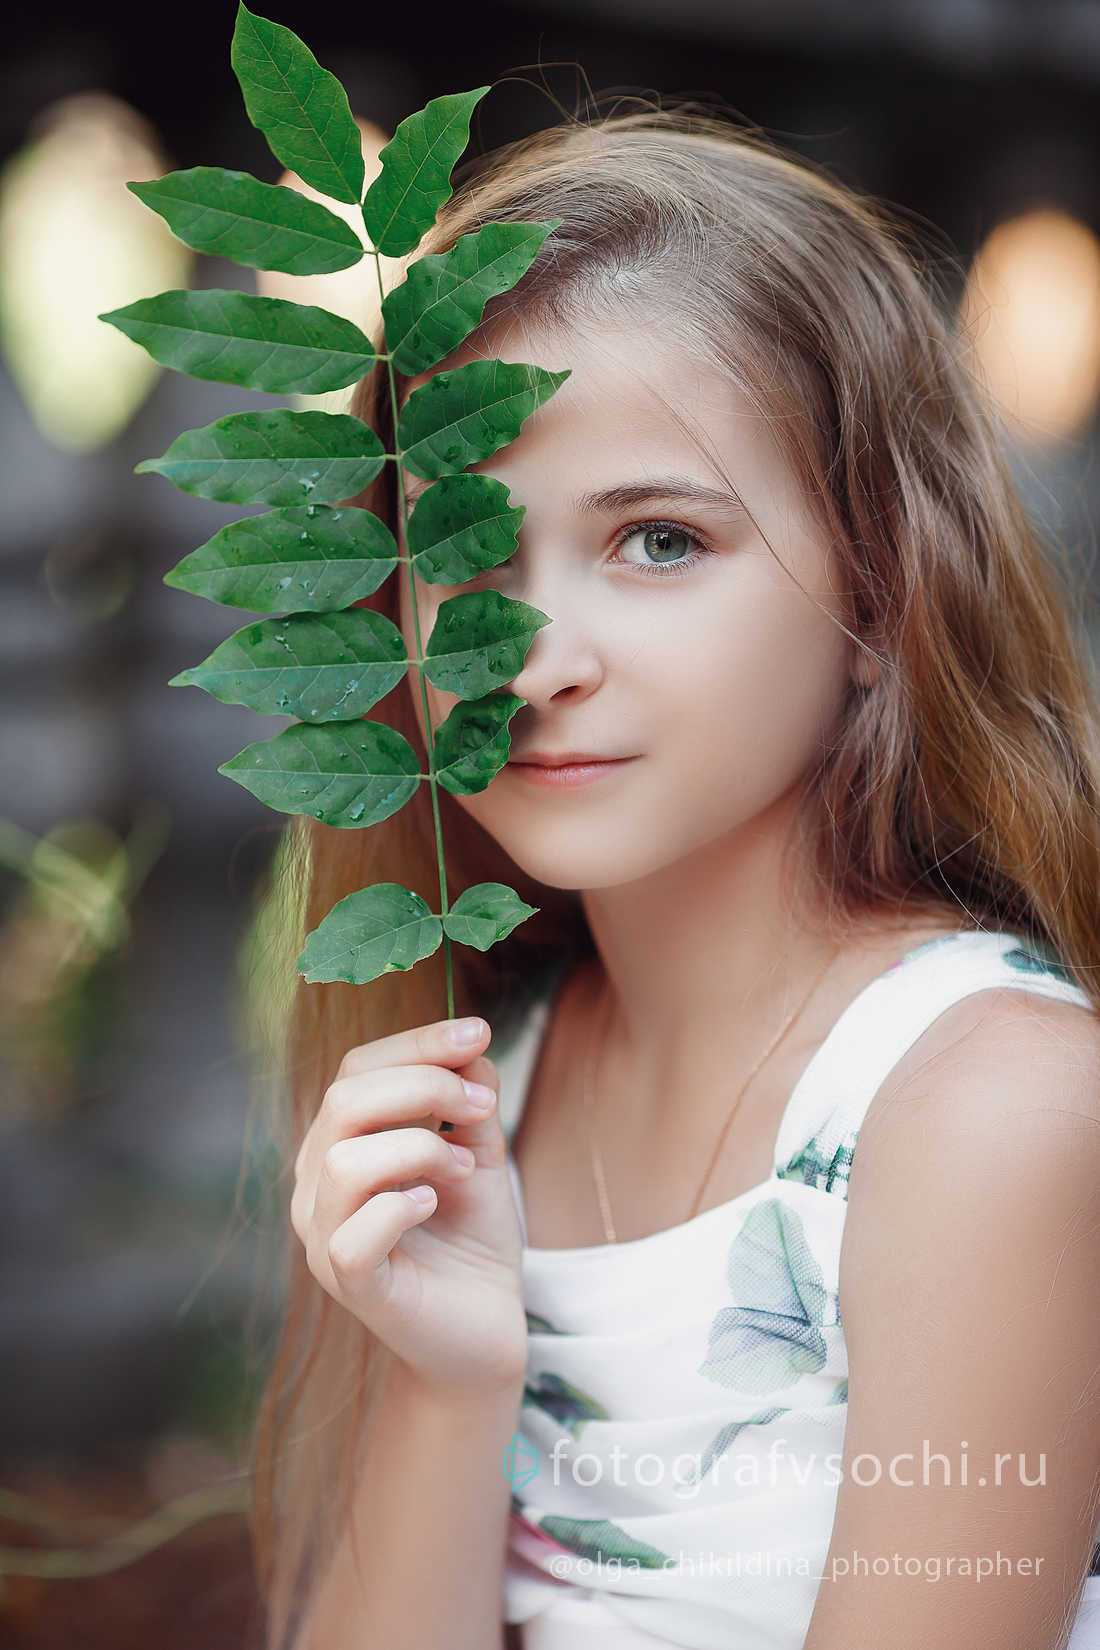 Девочка и веточка с зелеными листьями